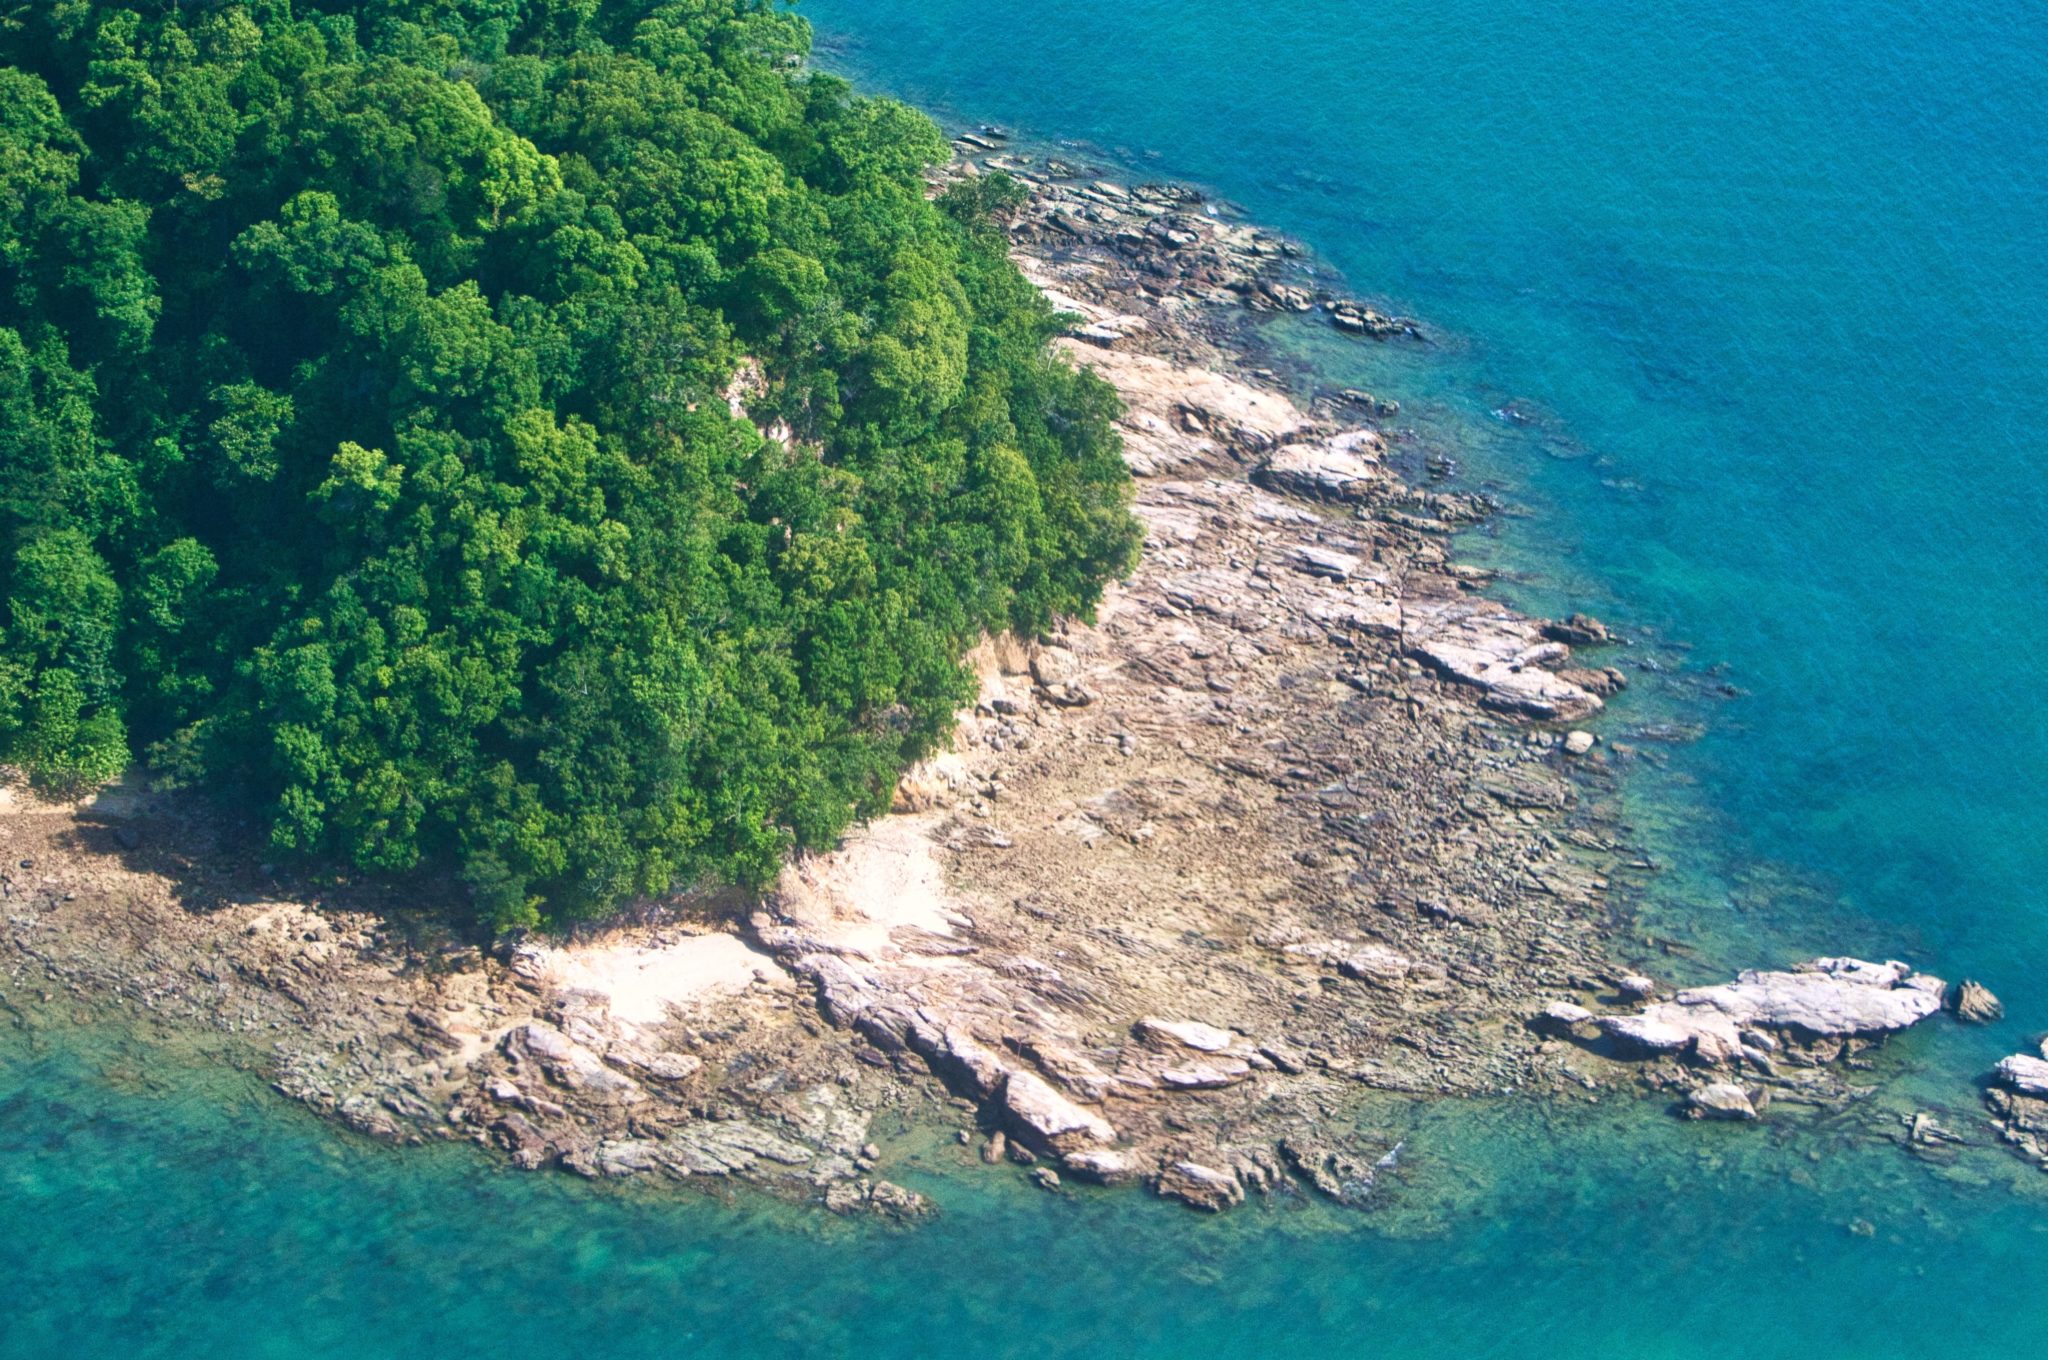 Widok z drona na wyspę Langkawi w Malezji - kawałek lasu, skały i niebieskie morze